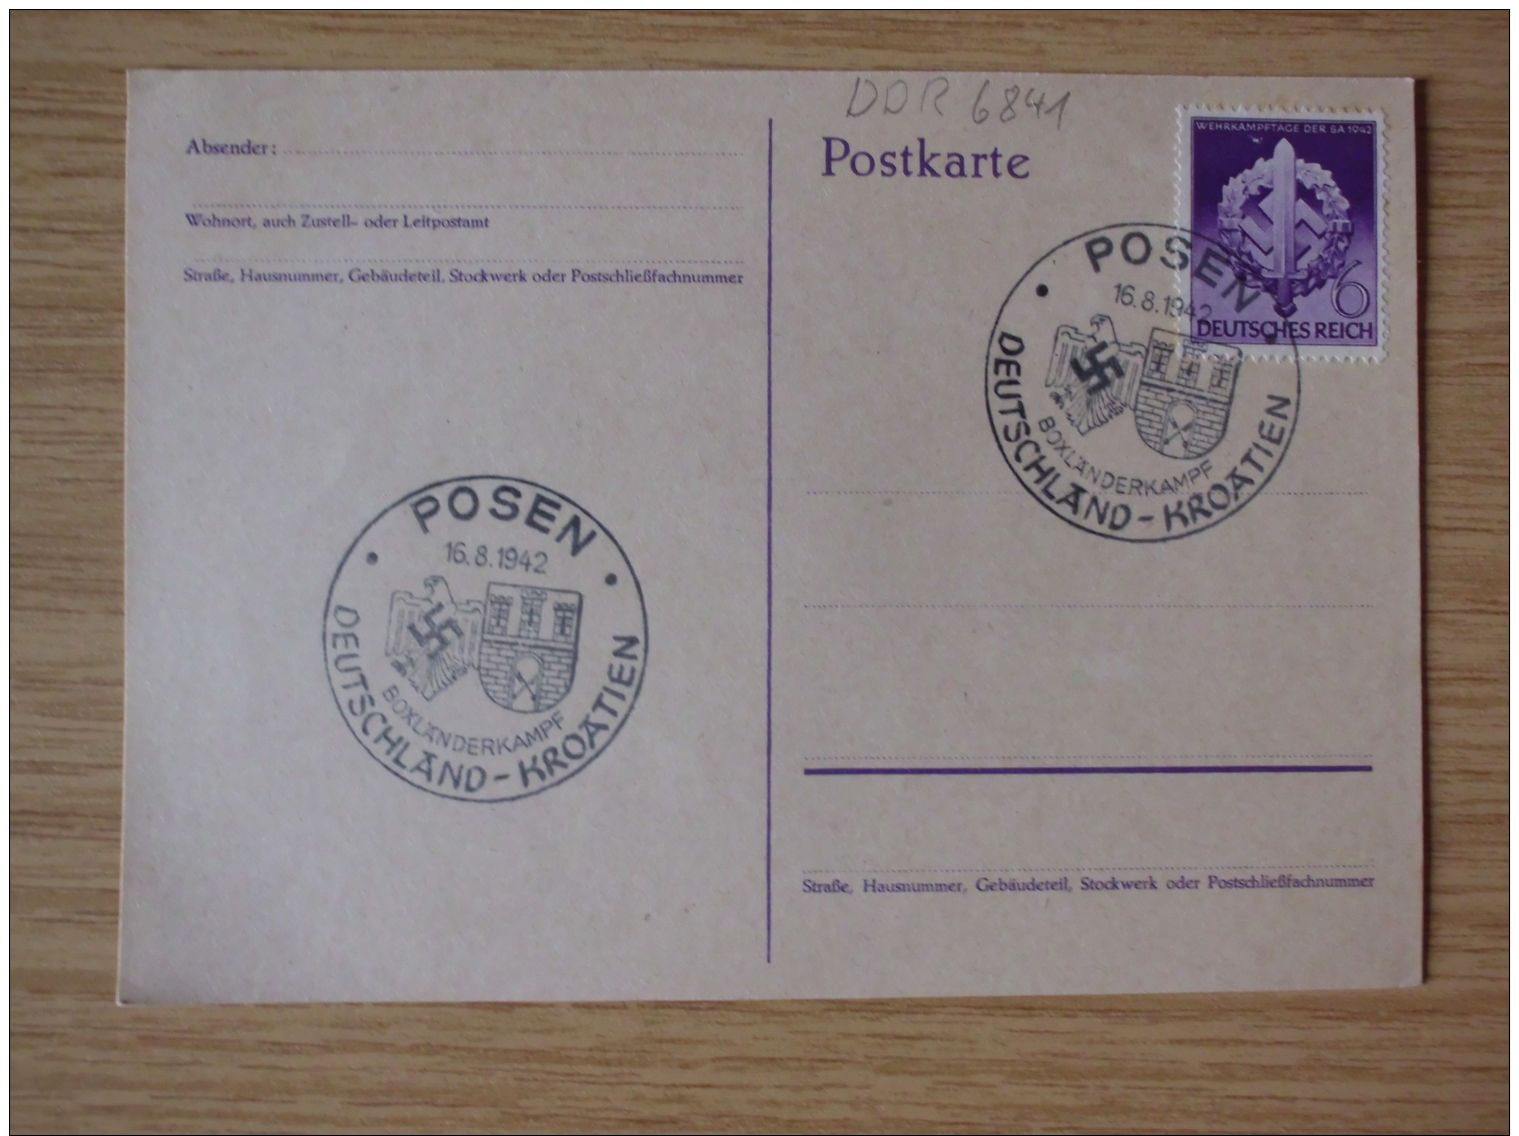 16.08.1942, POSTKARTE Mit Nr. 818 Mit SONDERSTEMPEL Von POSEN, BOXLÄNDERKAMPF DEUTSCHLAND-KROATIEN - Storia Postale